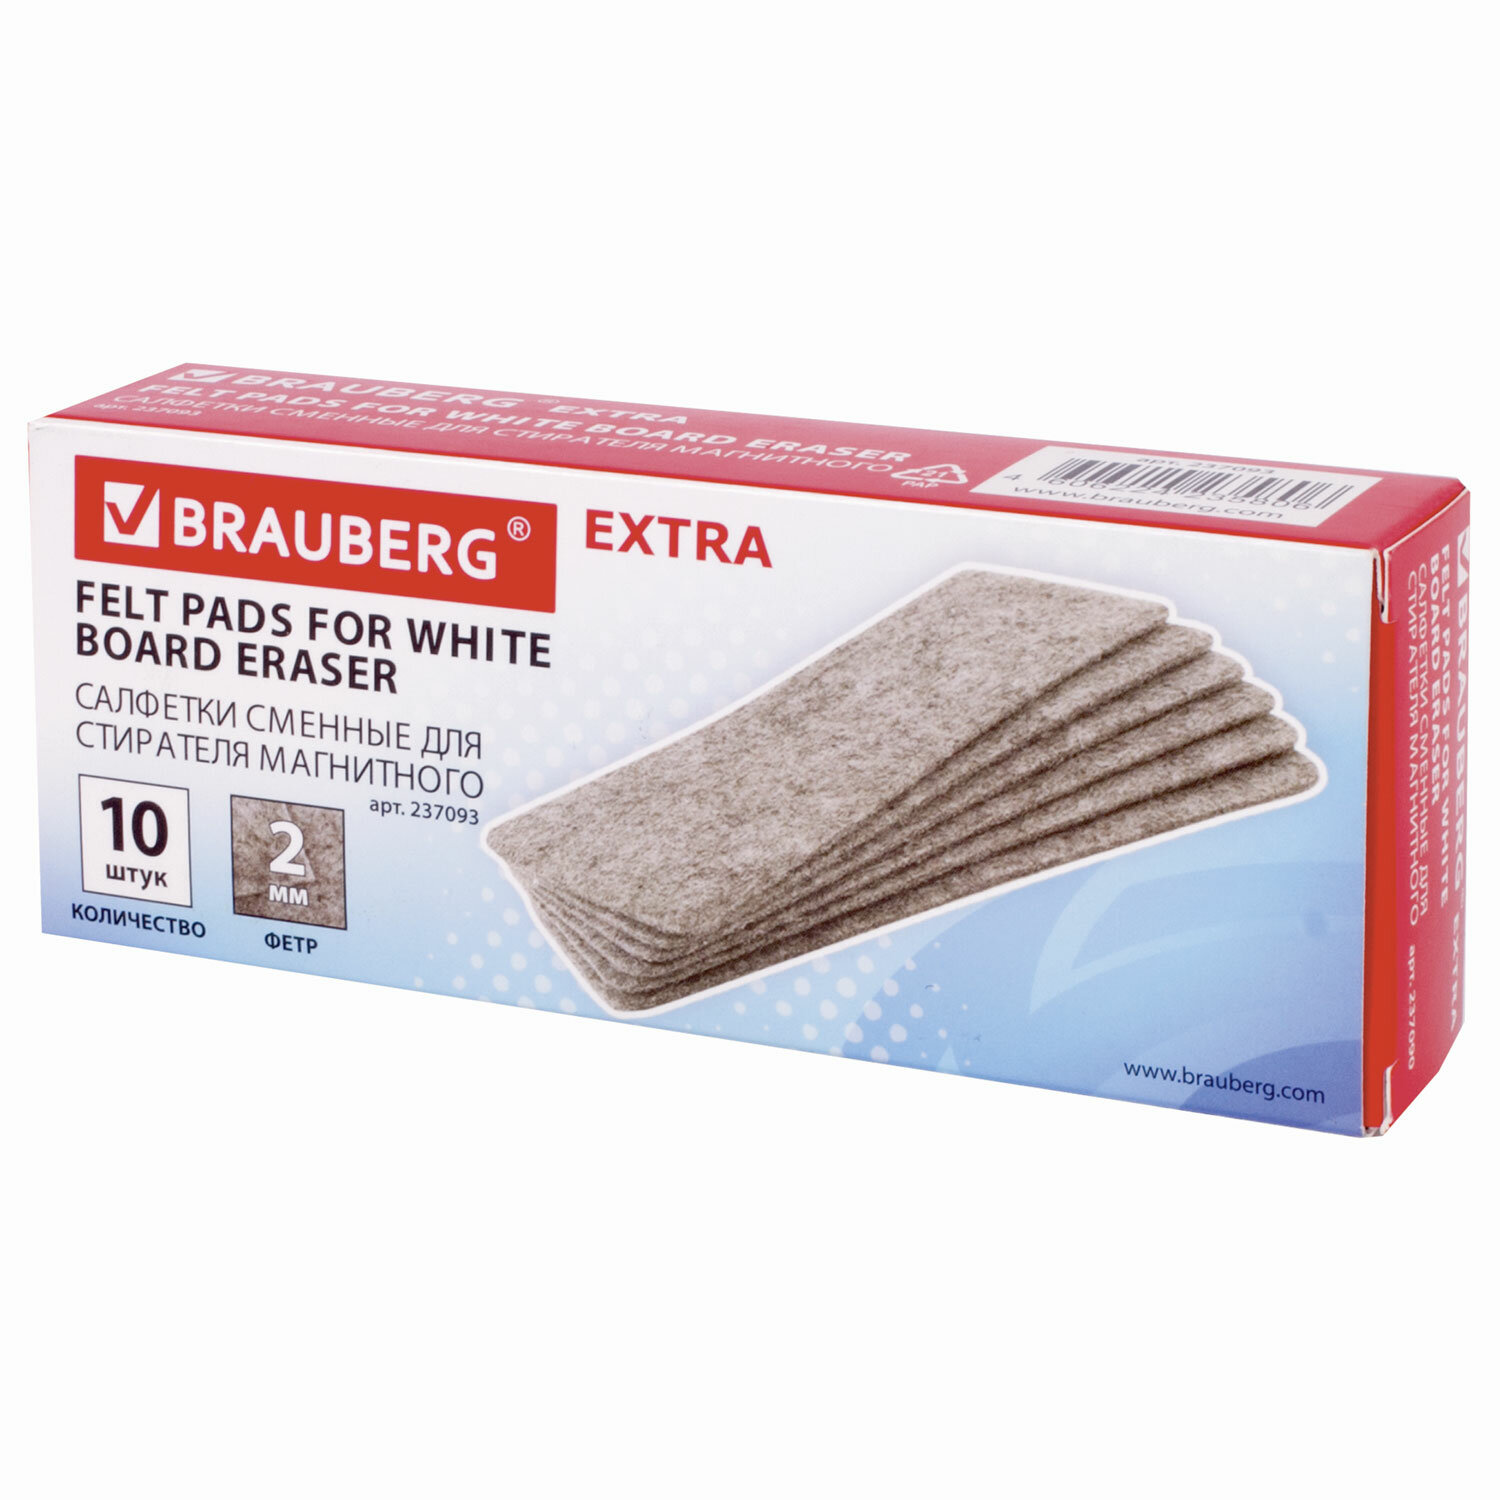 Салфетки сменные для стирателя магнитного Brauberg Extra 63х150 мм, 10 шт.